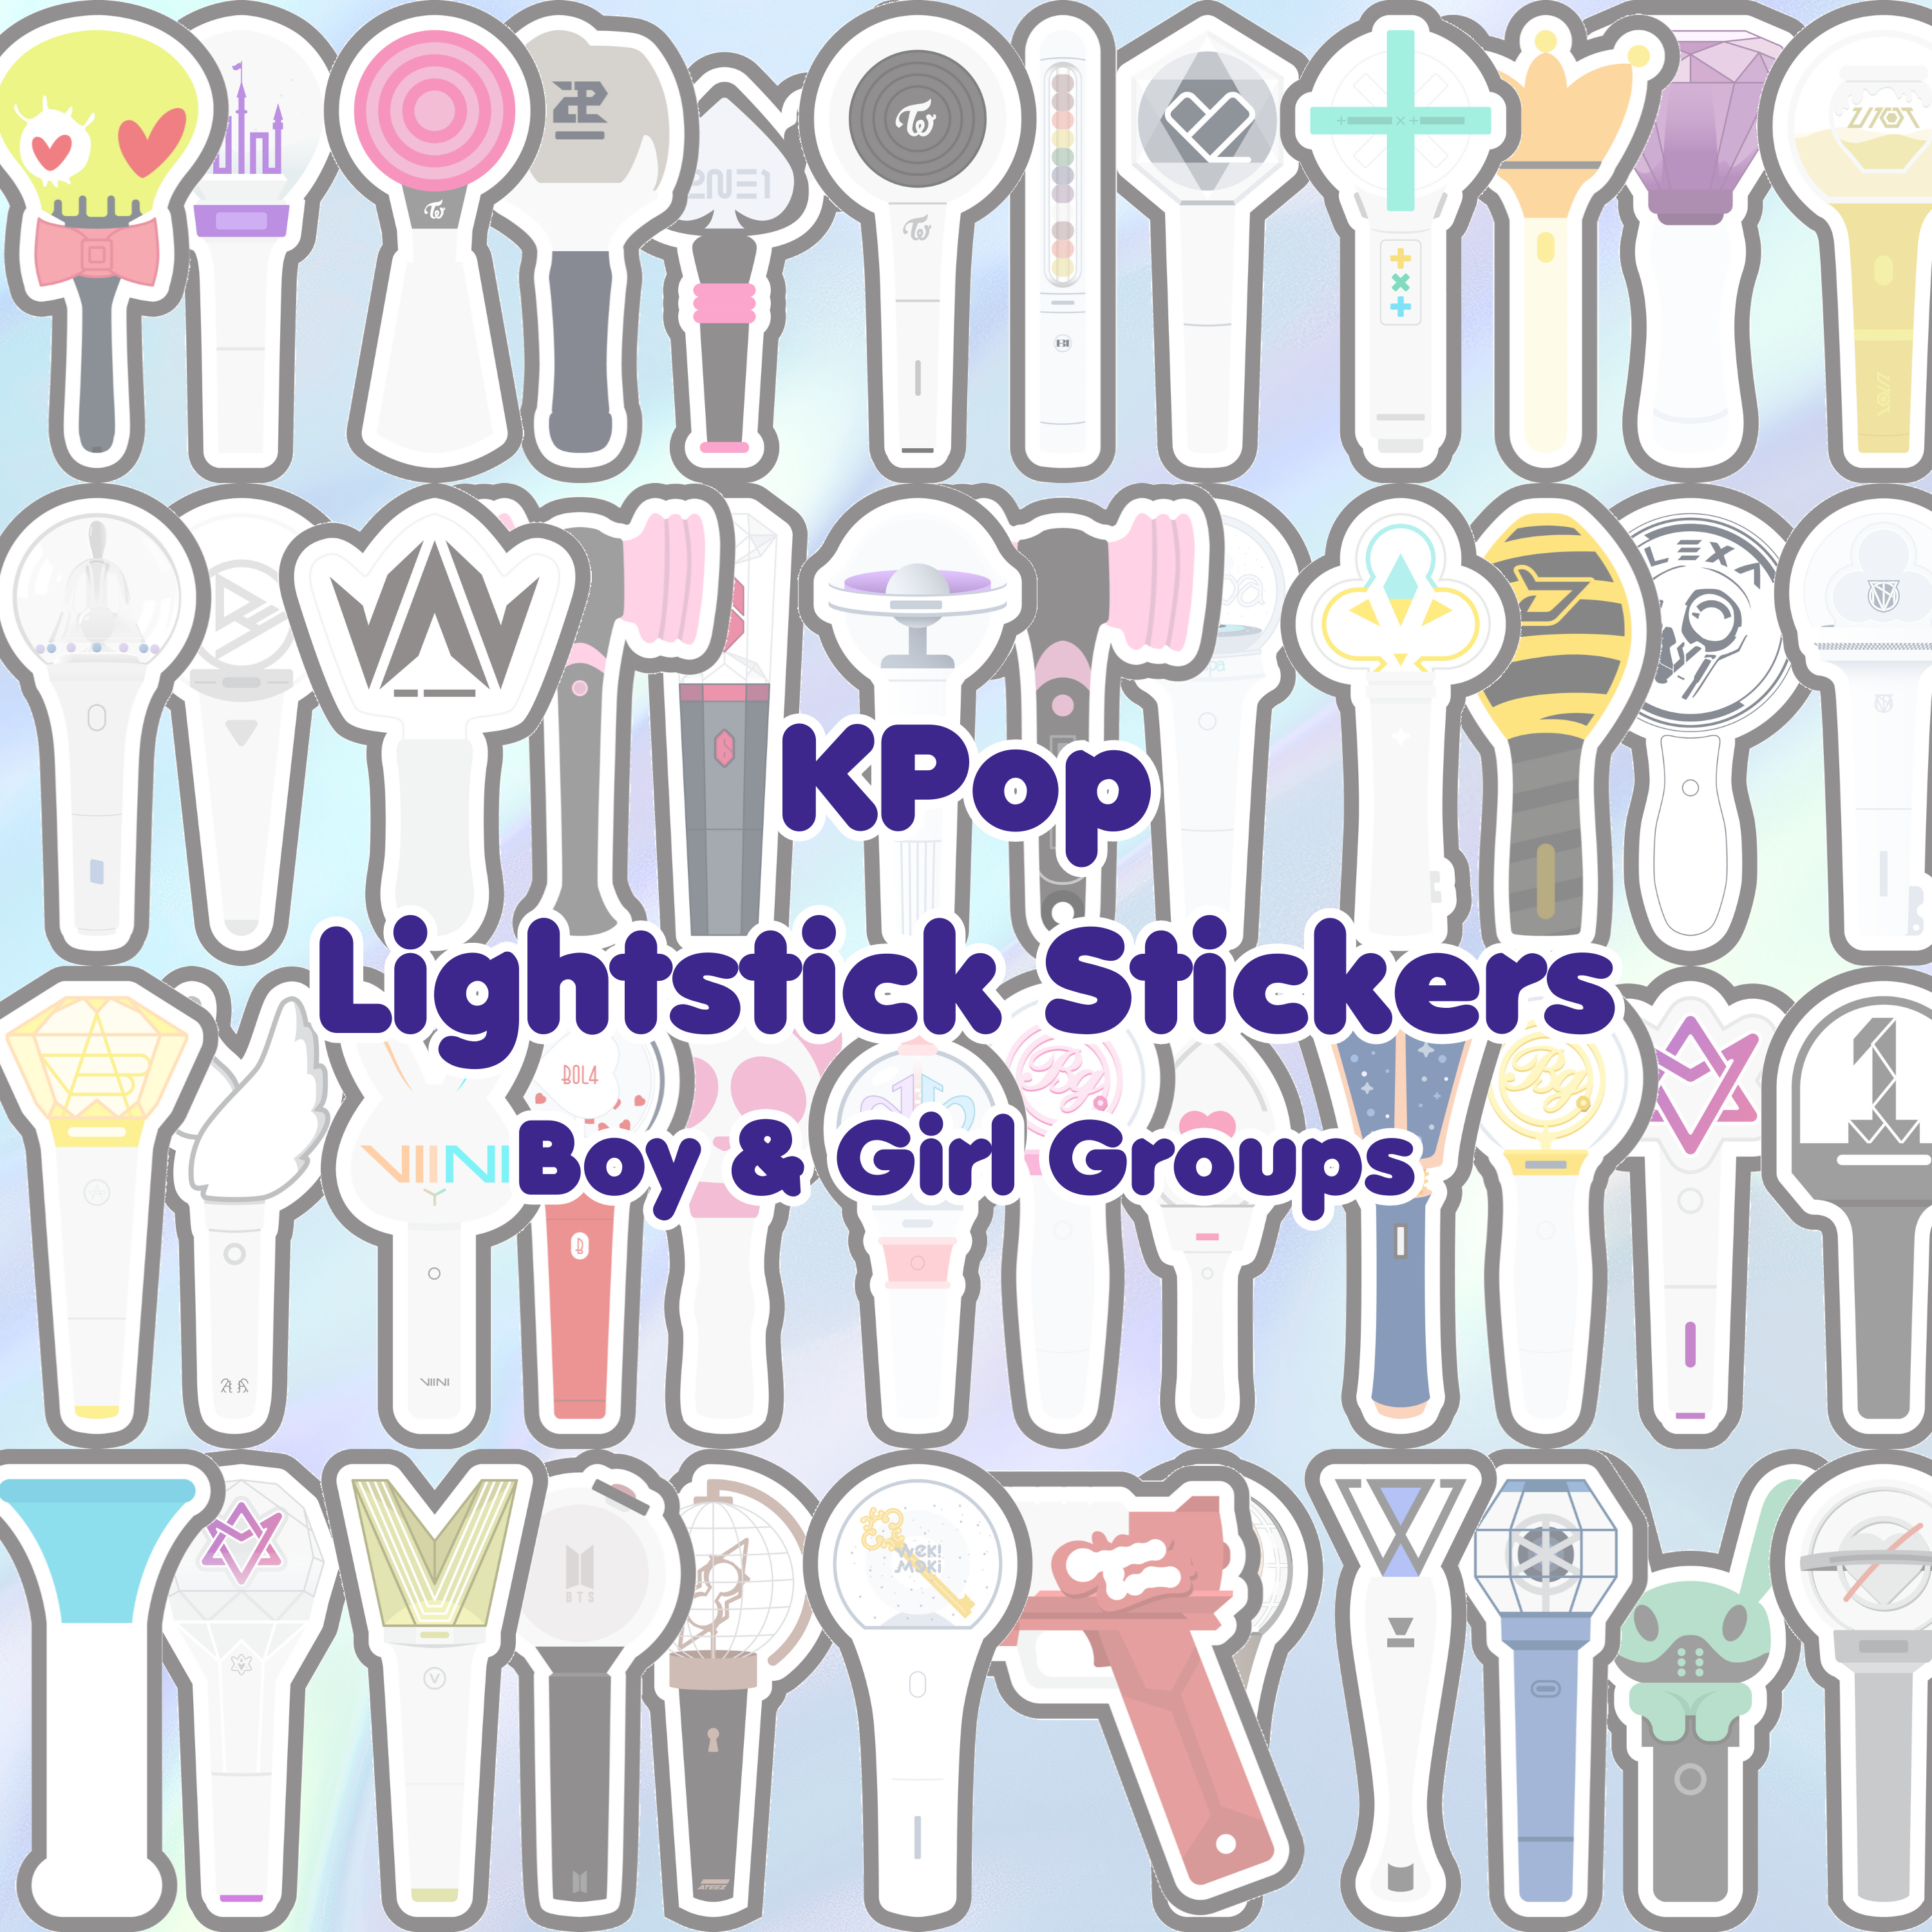 K-Pop Lightstick Stickers BTS Blackpink Twice LOONA ATEEZ Stray